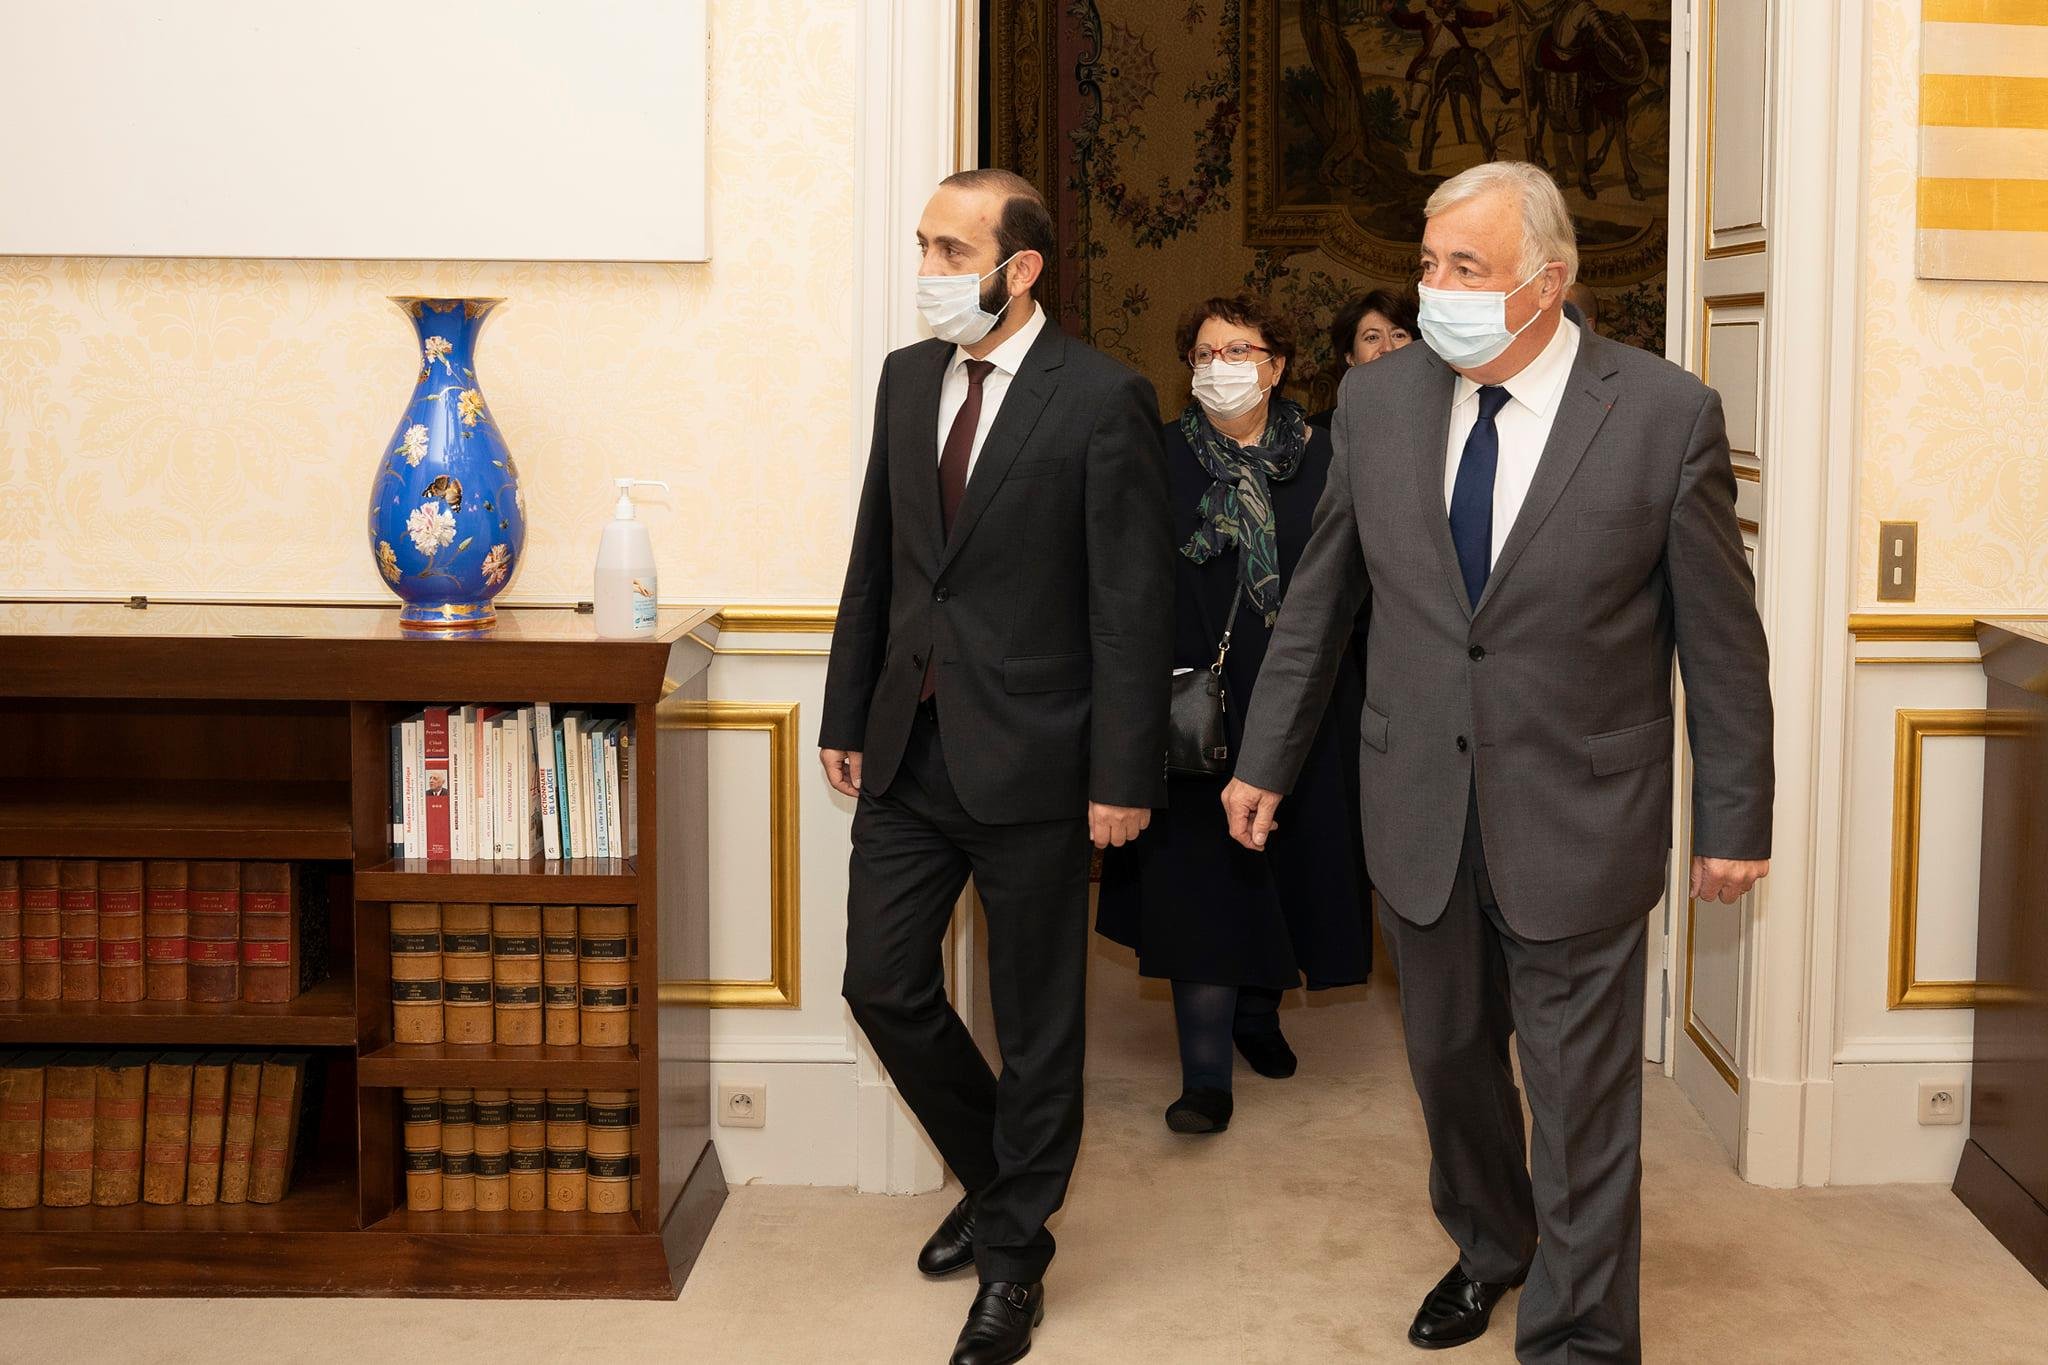 Փարիզ կատարած աշխատանքային այցի շրջանակներում ՀՀ ԱԳ նախարար Արարատ Միրզոյանը հանդիպում է ունեցել Ֆրանսիայի Սենատի նախագահ Ժերար Լարշեի հետ